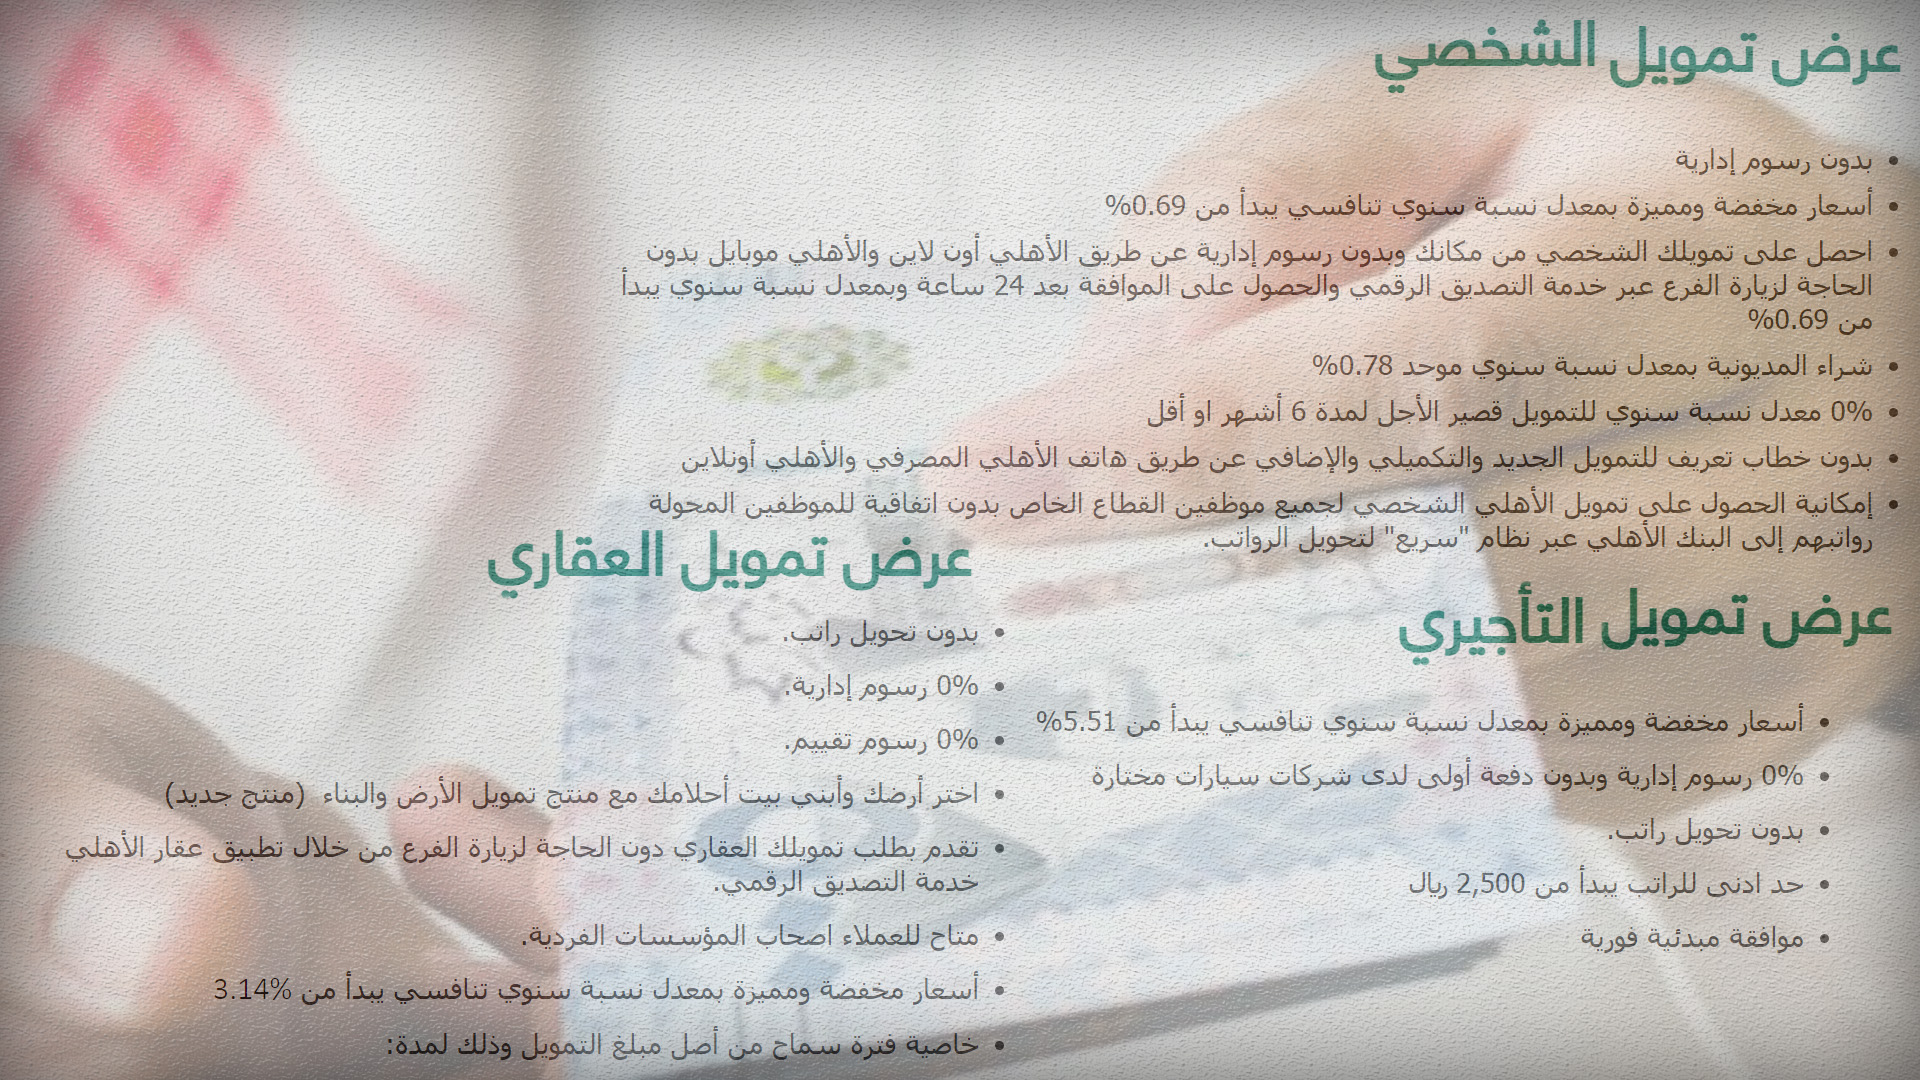 تمويل سريع بدون كفيل بقيمة 500 ألف ريال نصف مليون للسعوديين والمقيمين والقطاع الخاص